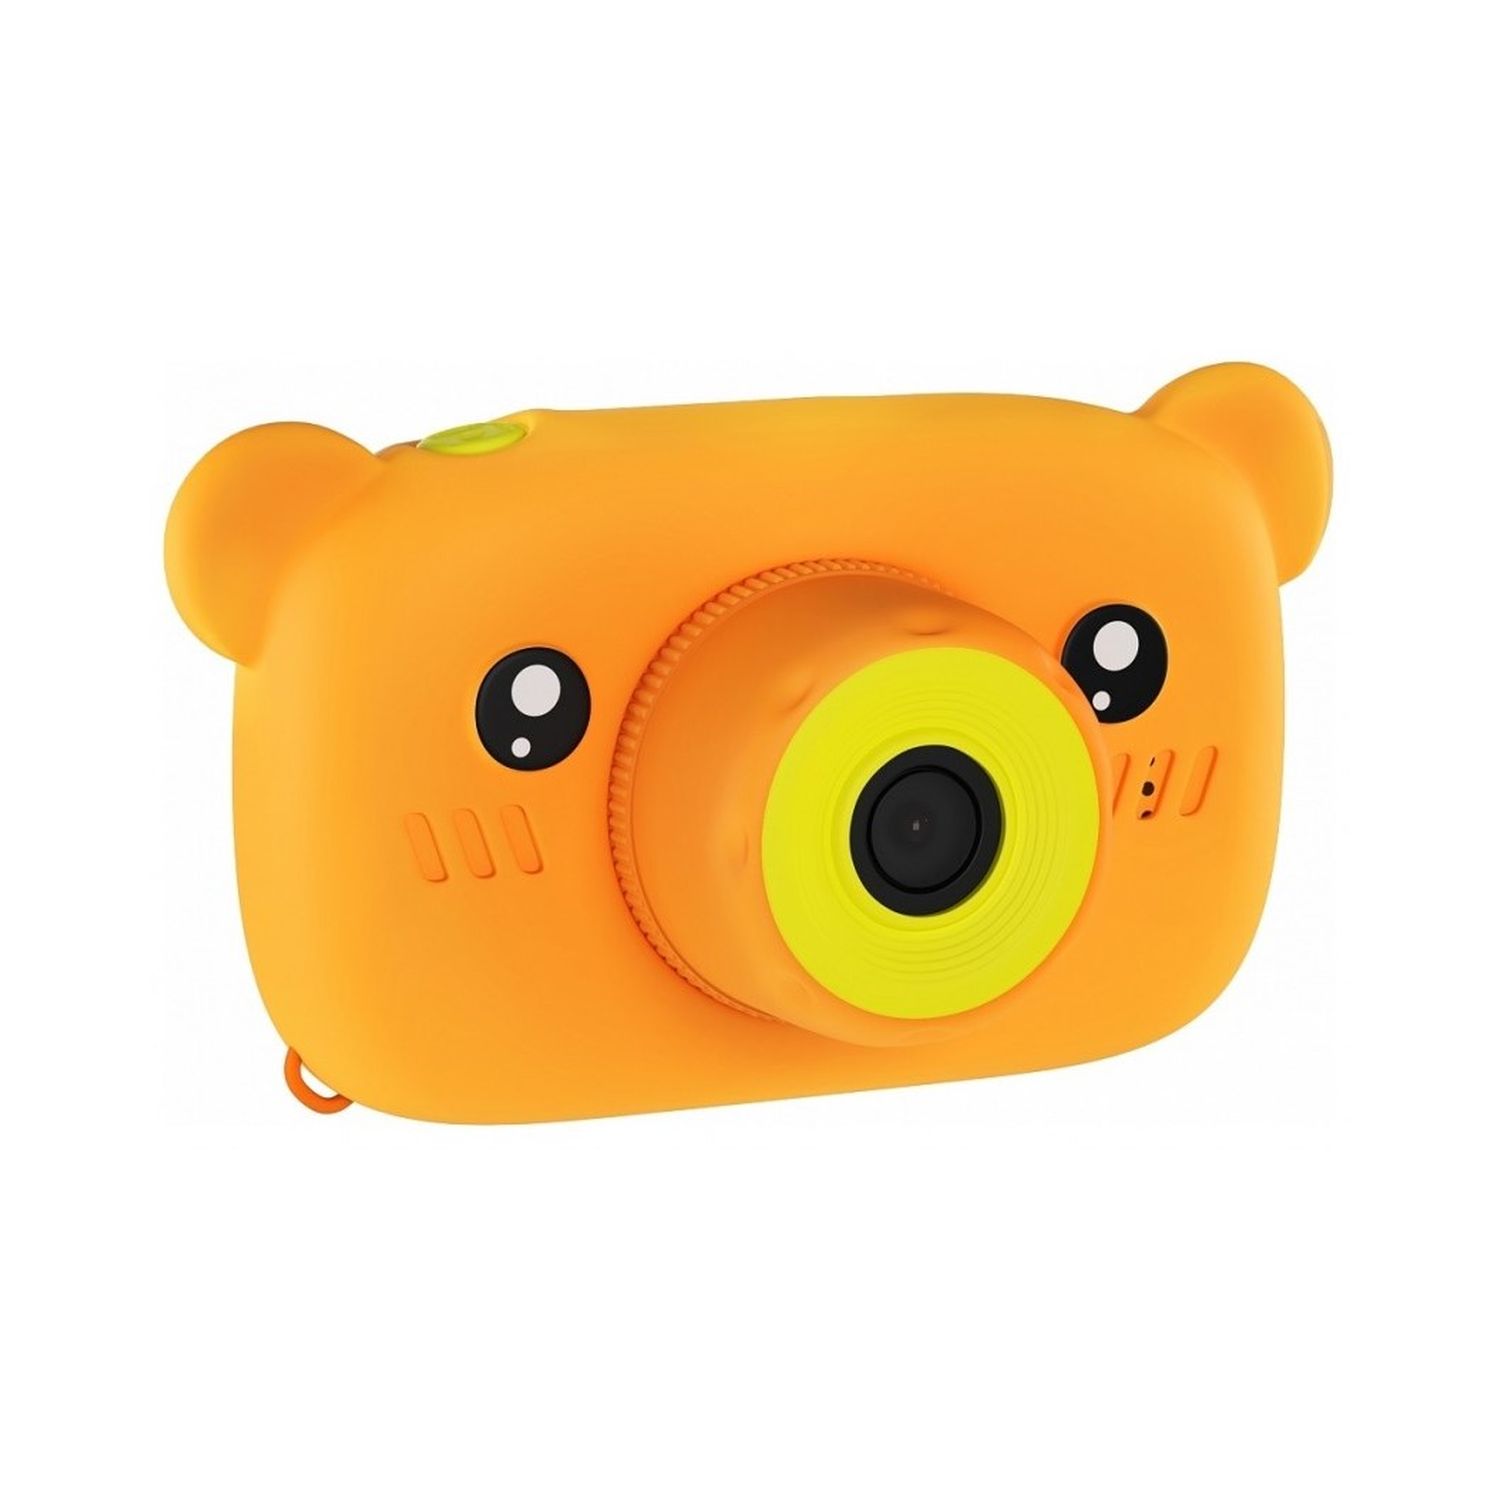 Фотоаппарат Uniglodis детский Мишка оранжевый - фото 2